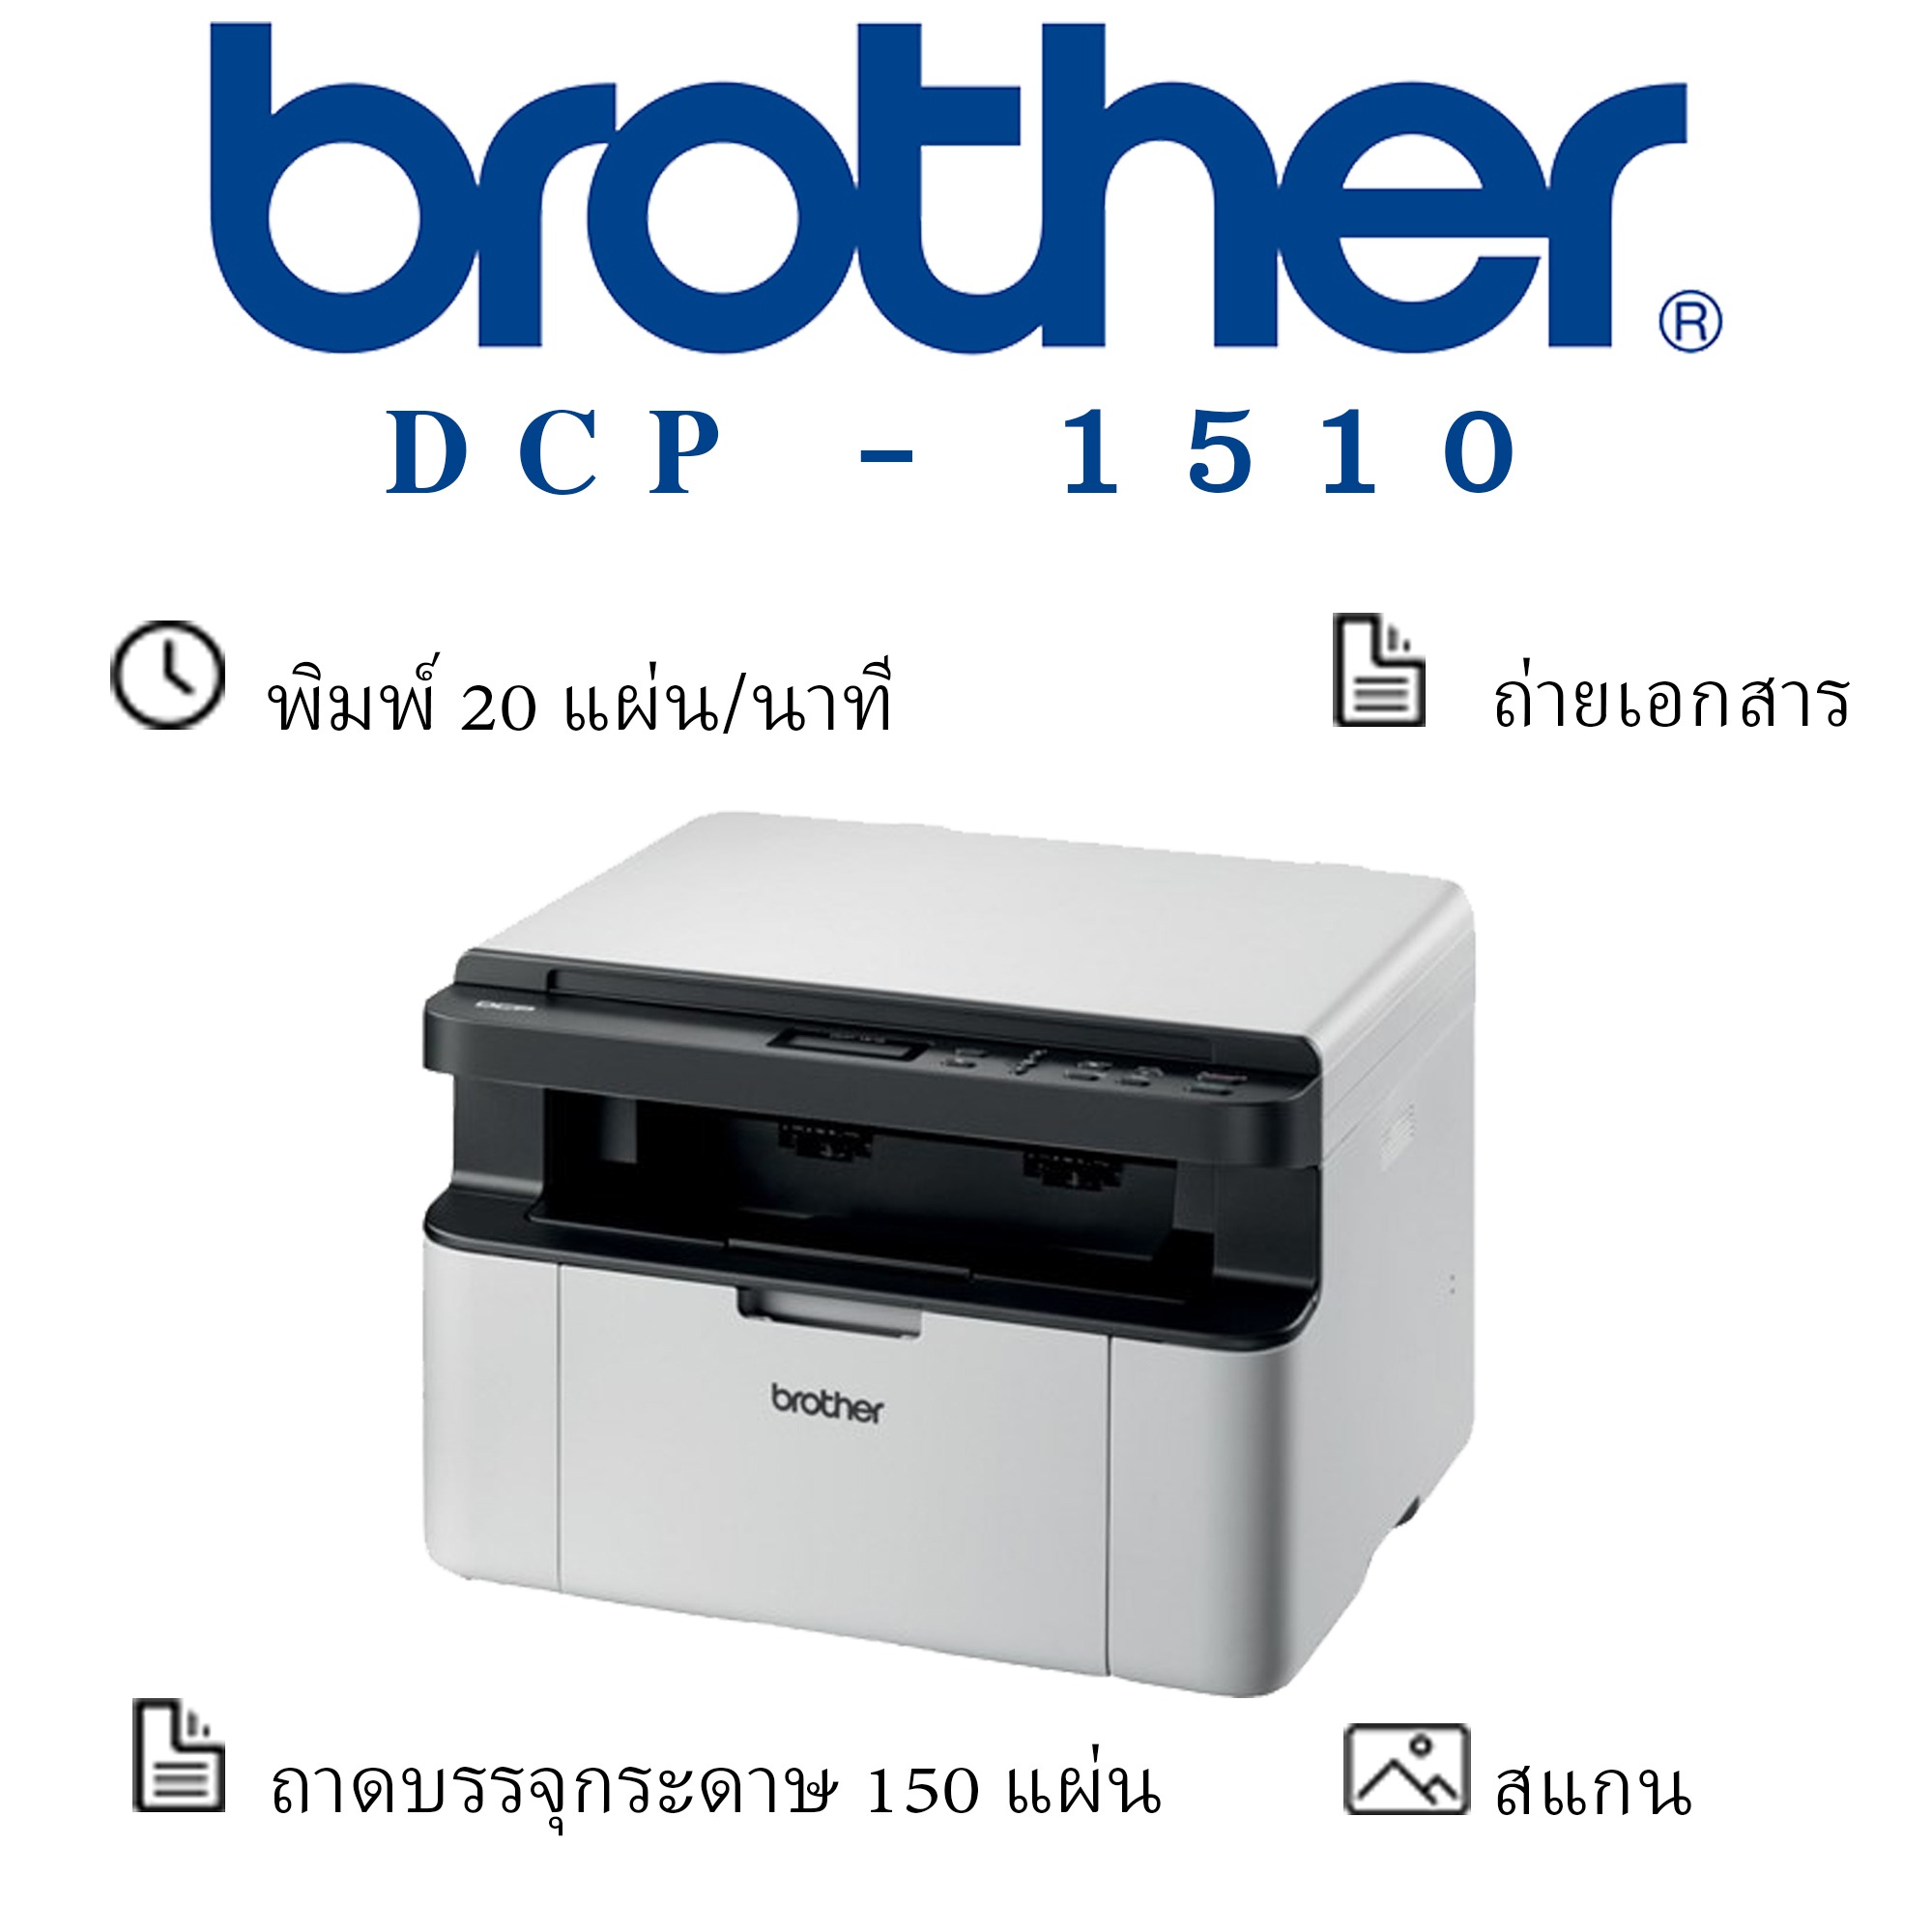 Brother DCP-1510 เครื่องพิมพ์เลเซอร์ ขาว-ดำ มัลติฟังก์ชัน